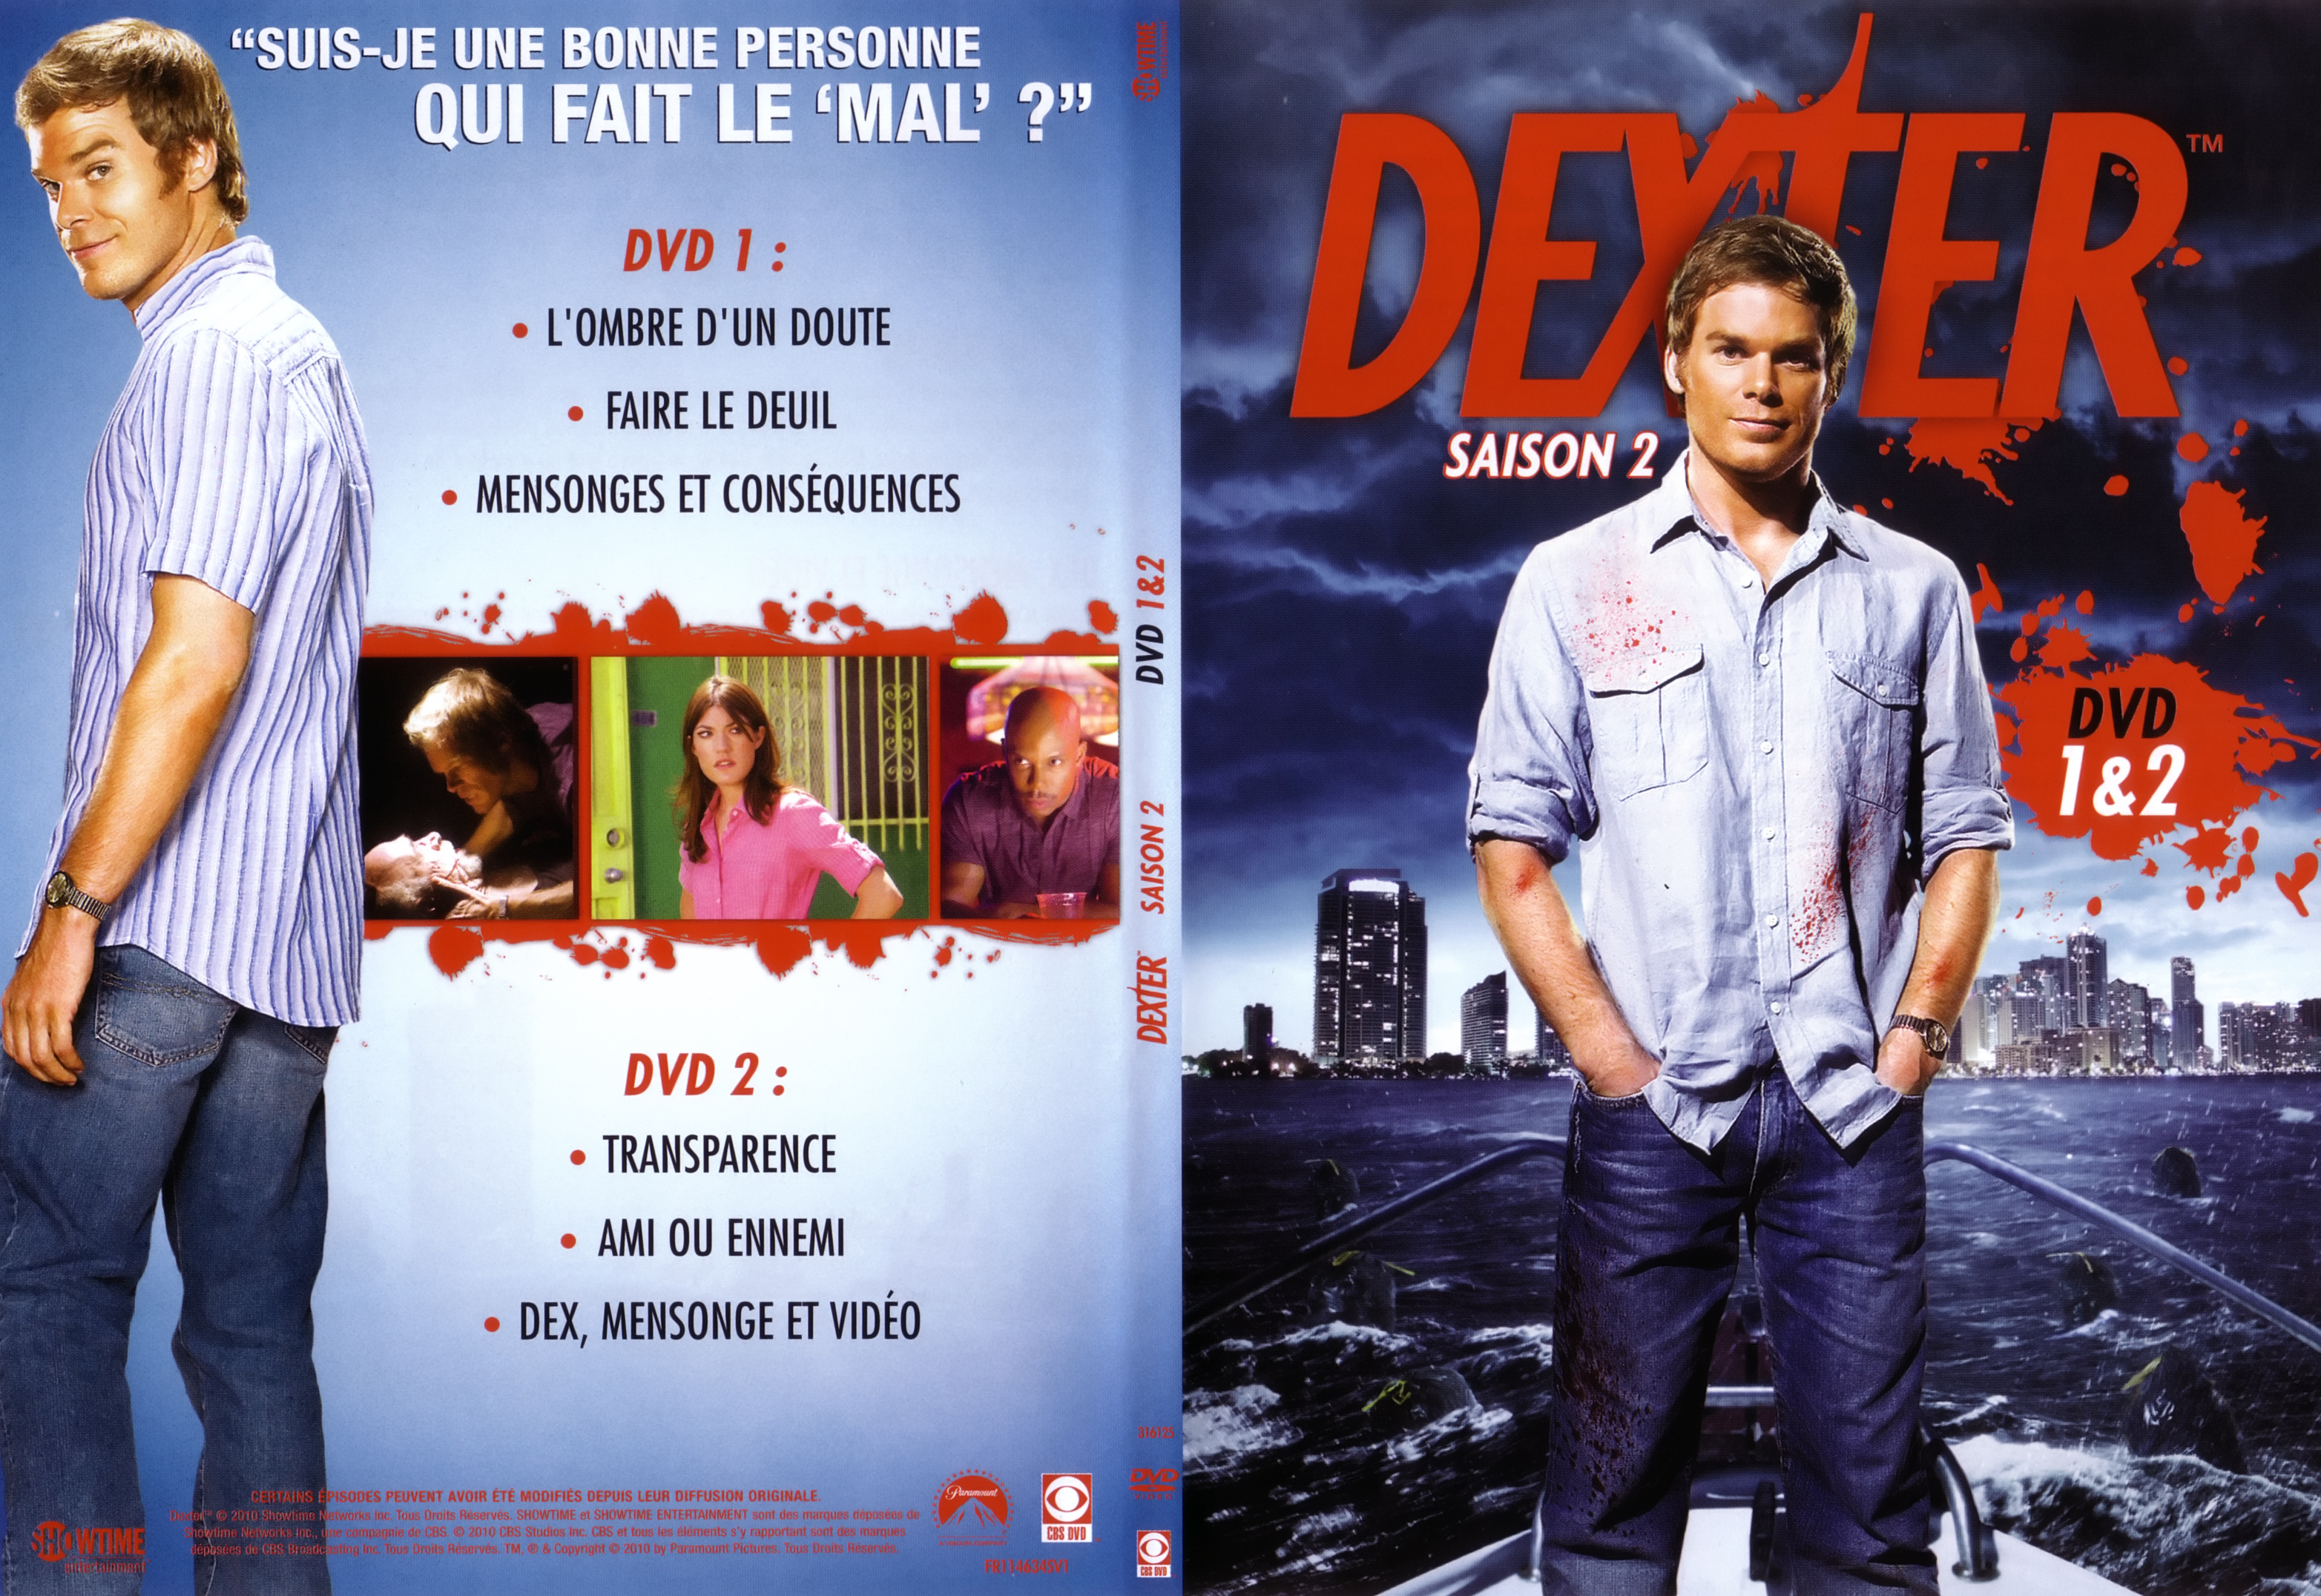 Jaquette DVD Dexter Saison 2 DVD 1